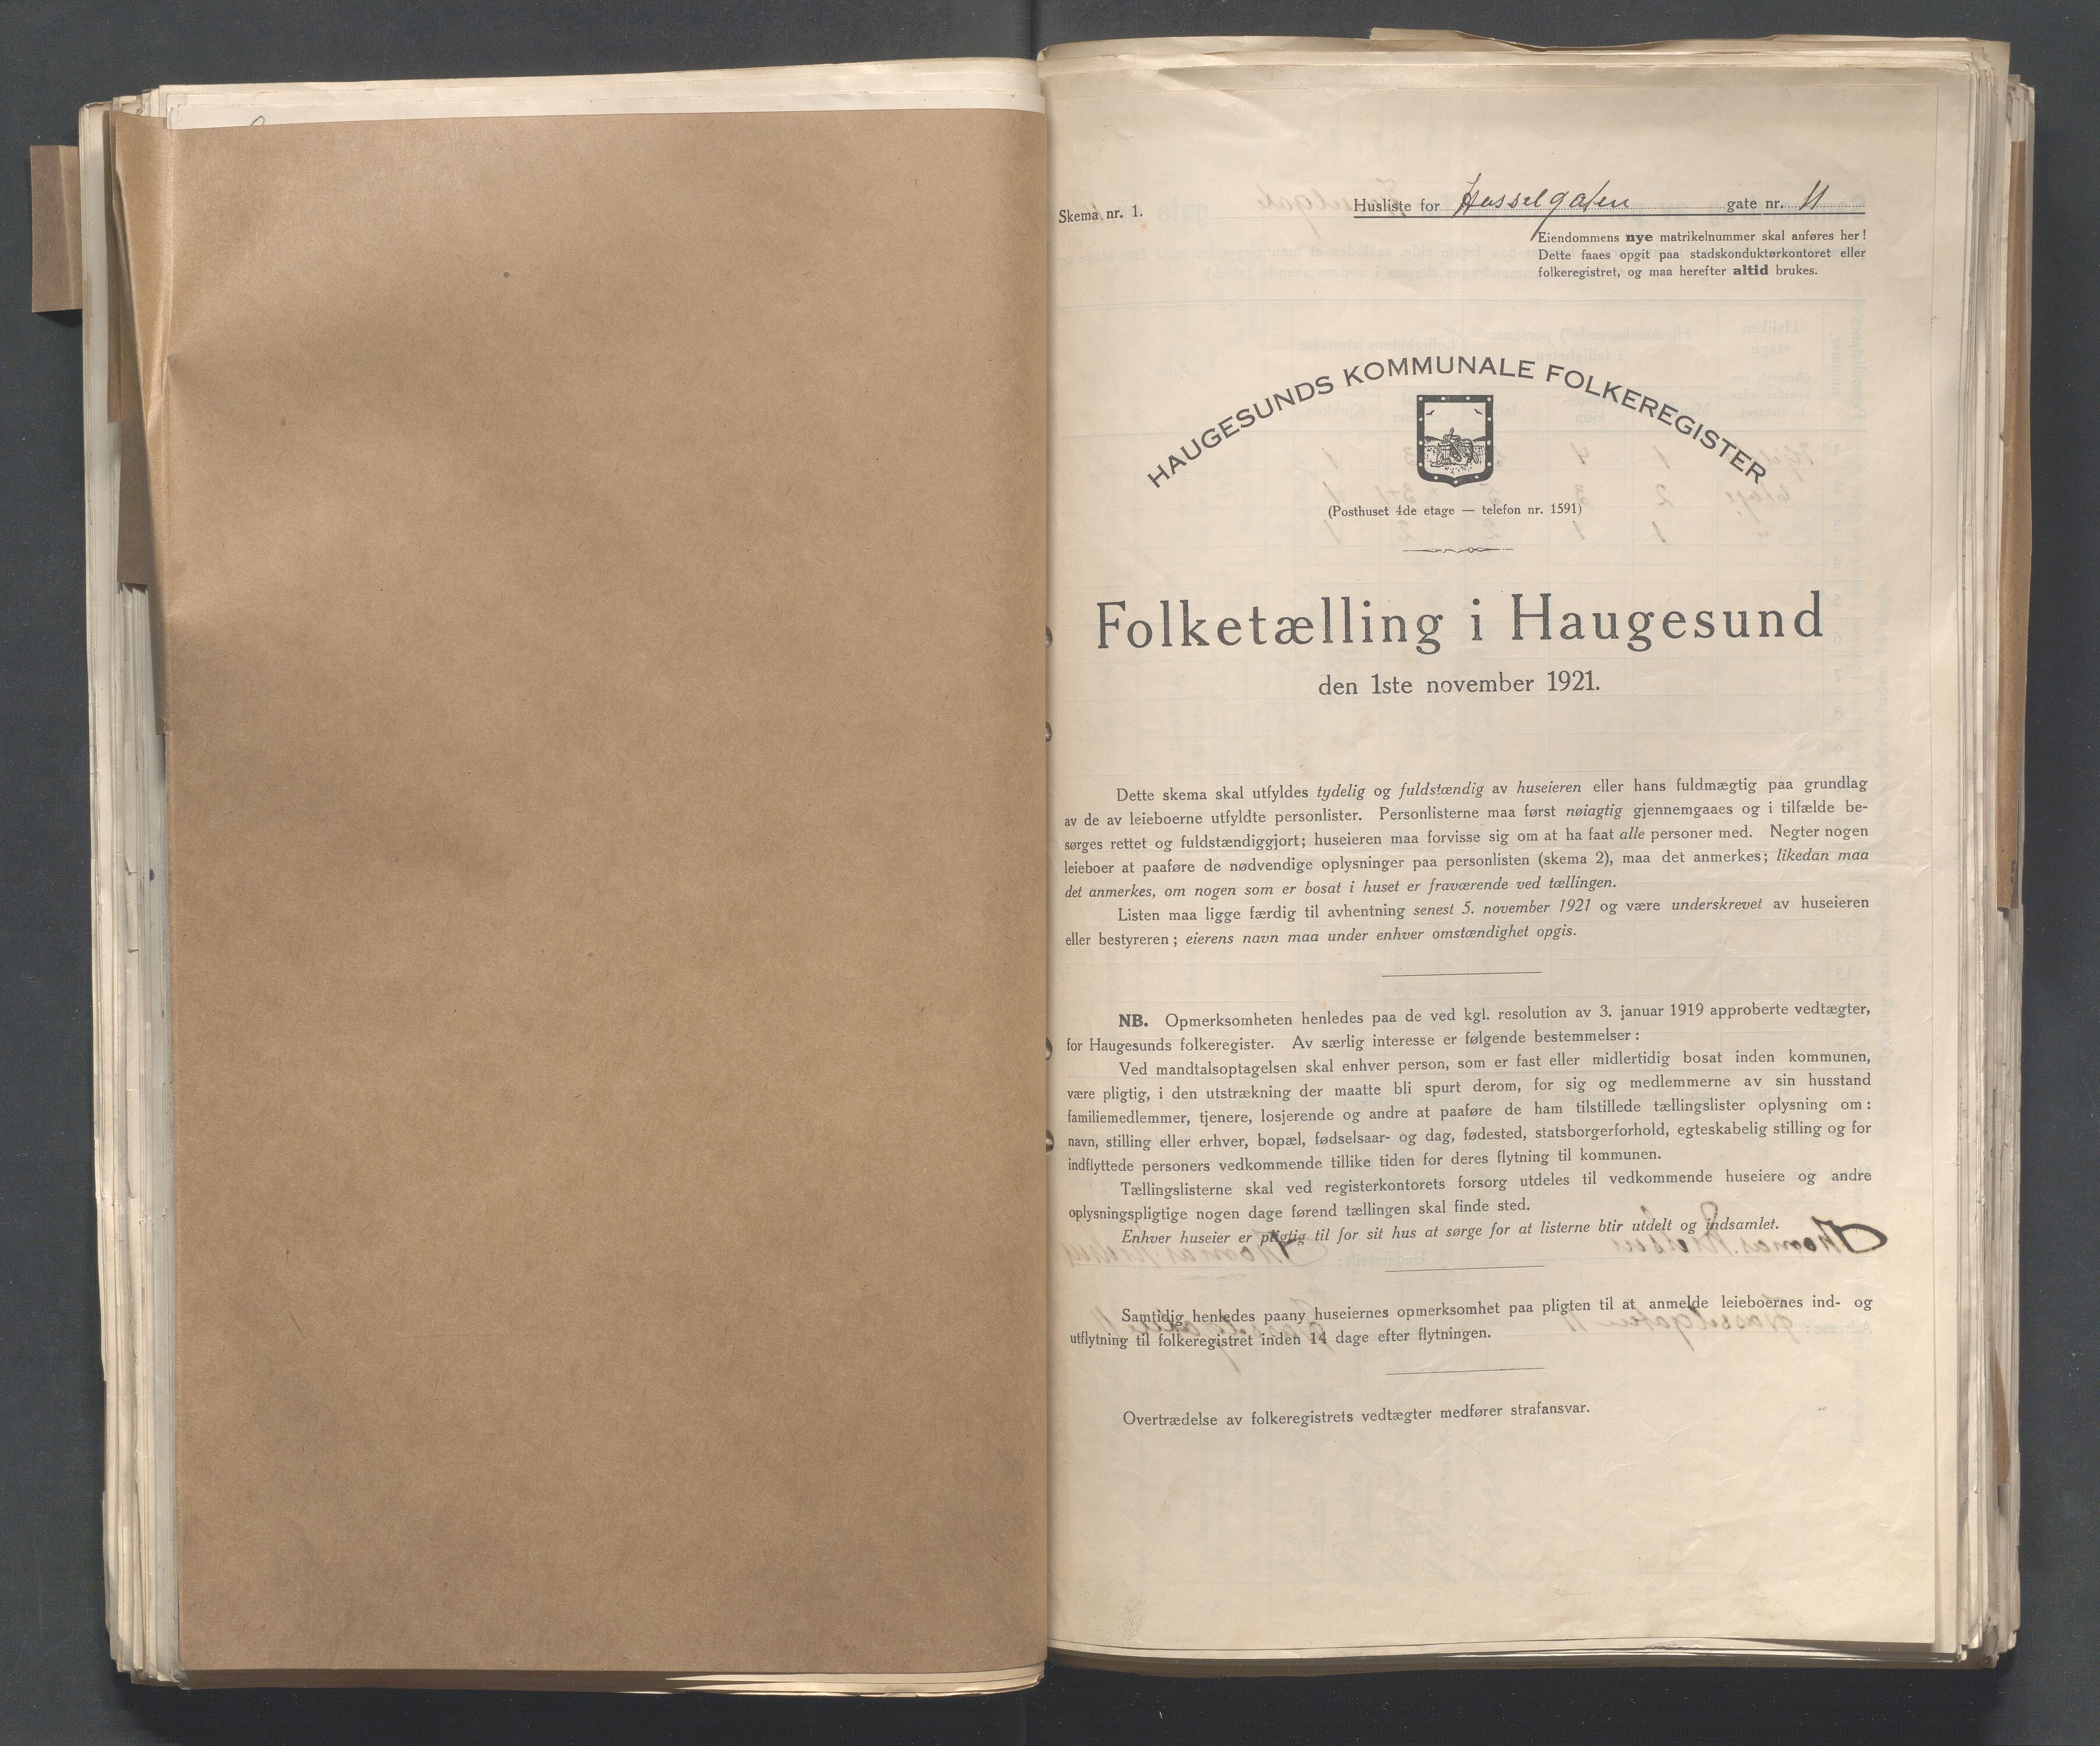 IKAR, Local census 1.11.1921 for Haugesund, 1921, p. 5995